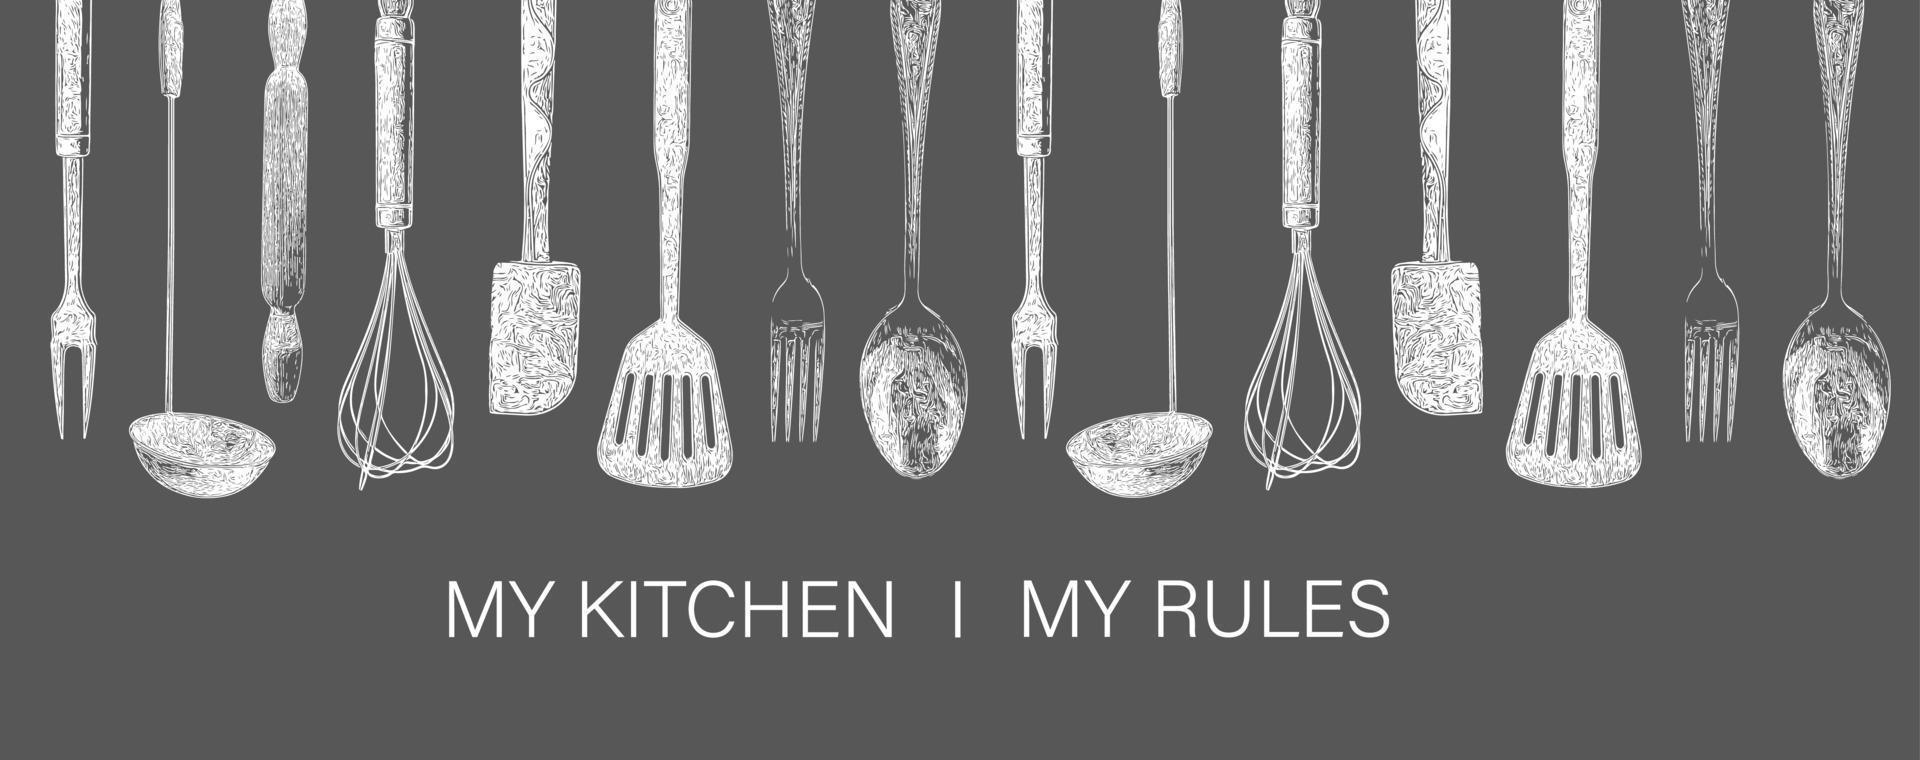 cartel de tipografía dibujada a mano mi cocina, mis reglas. vector